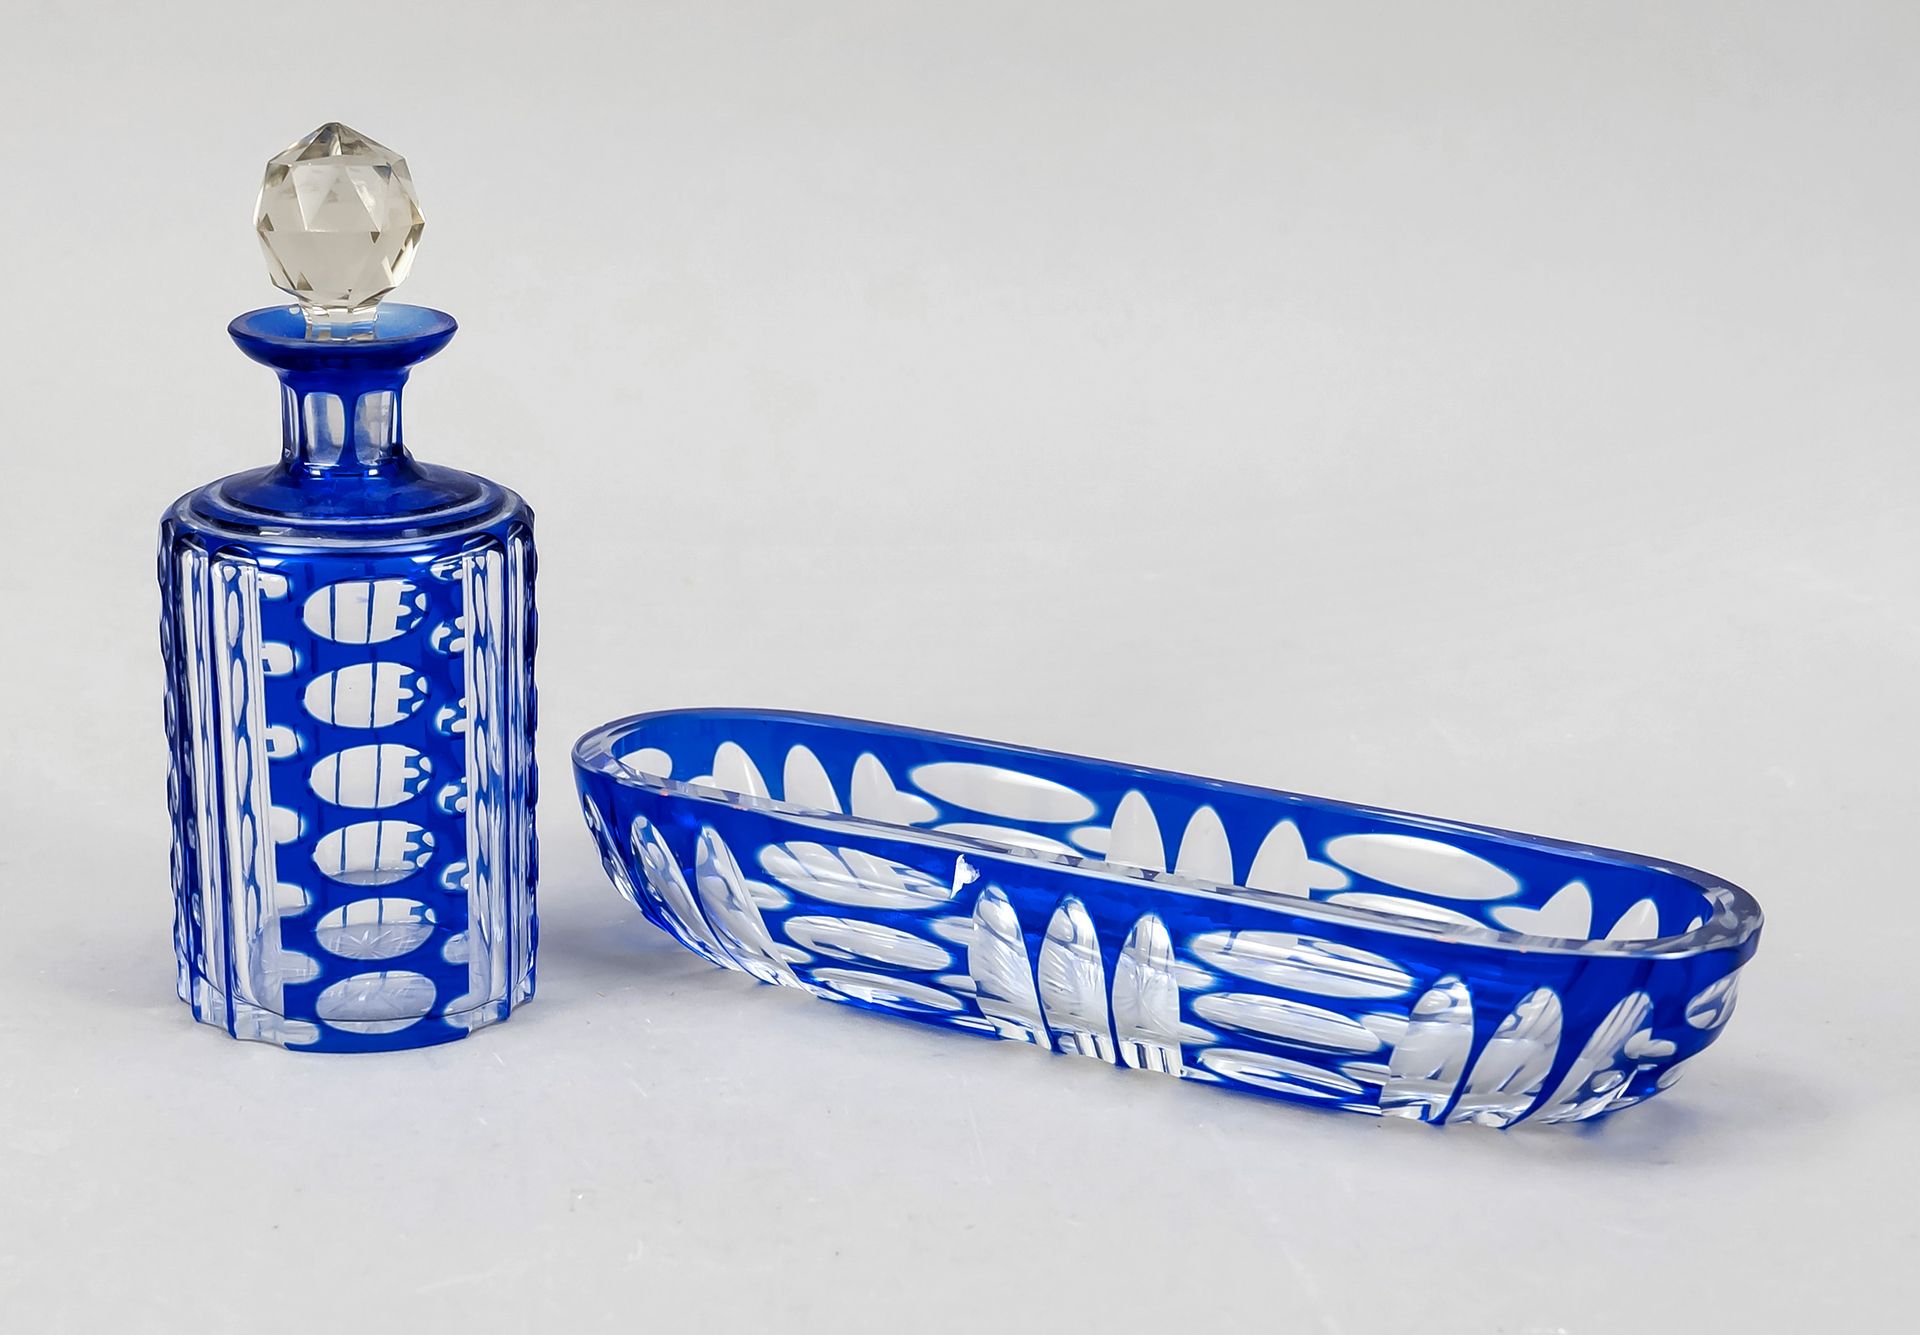 Null 纵向椭圆形碗和灯塔，20世纪，透明玻璃，部分蓝色覆盖，切割装饰，长21.5厘米，高15厘米